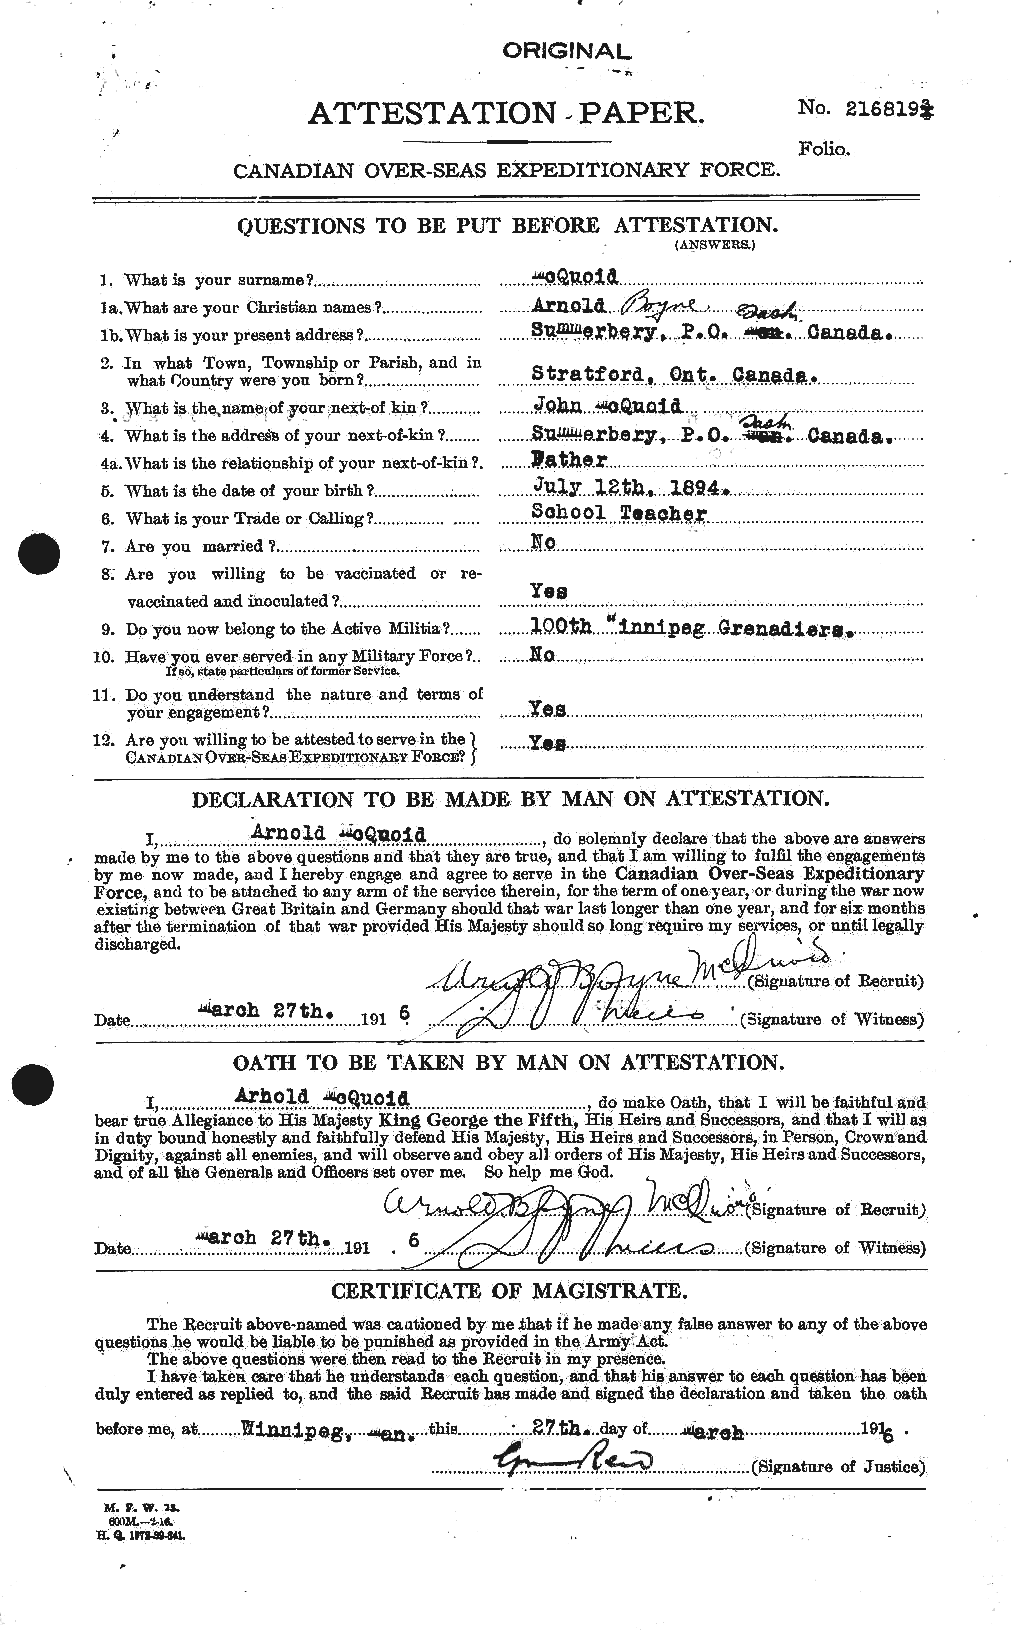 Dossiers du Personnel de la Première Guerre mondiale - CEC 546070a